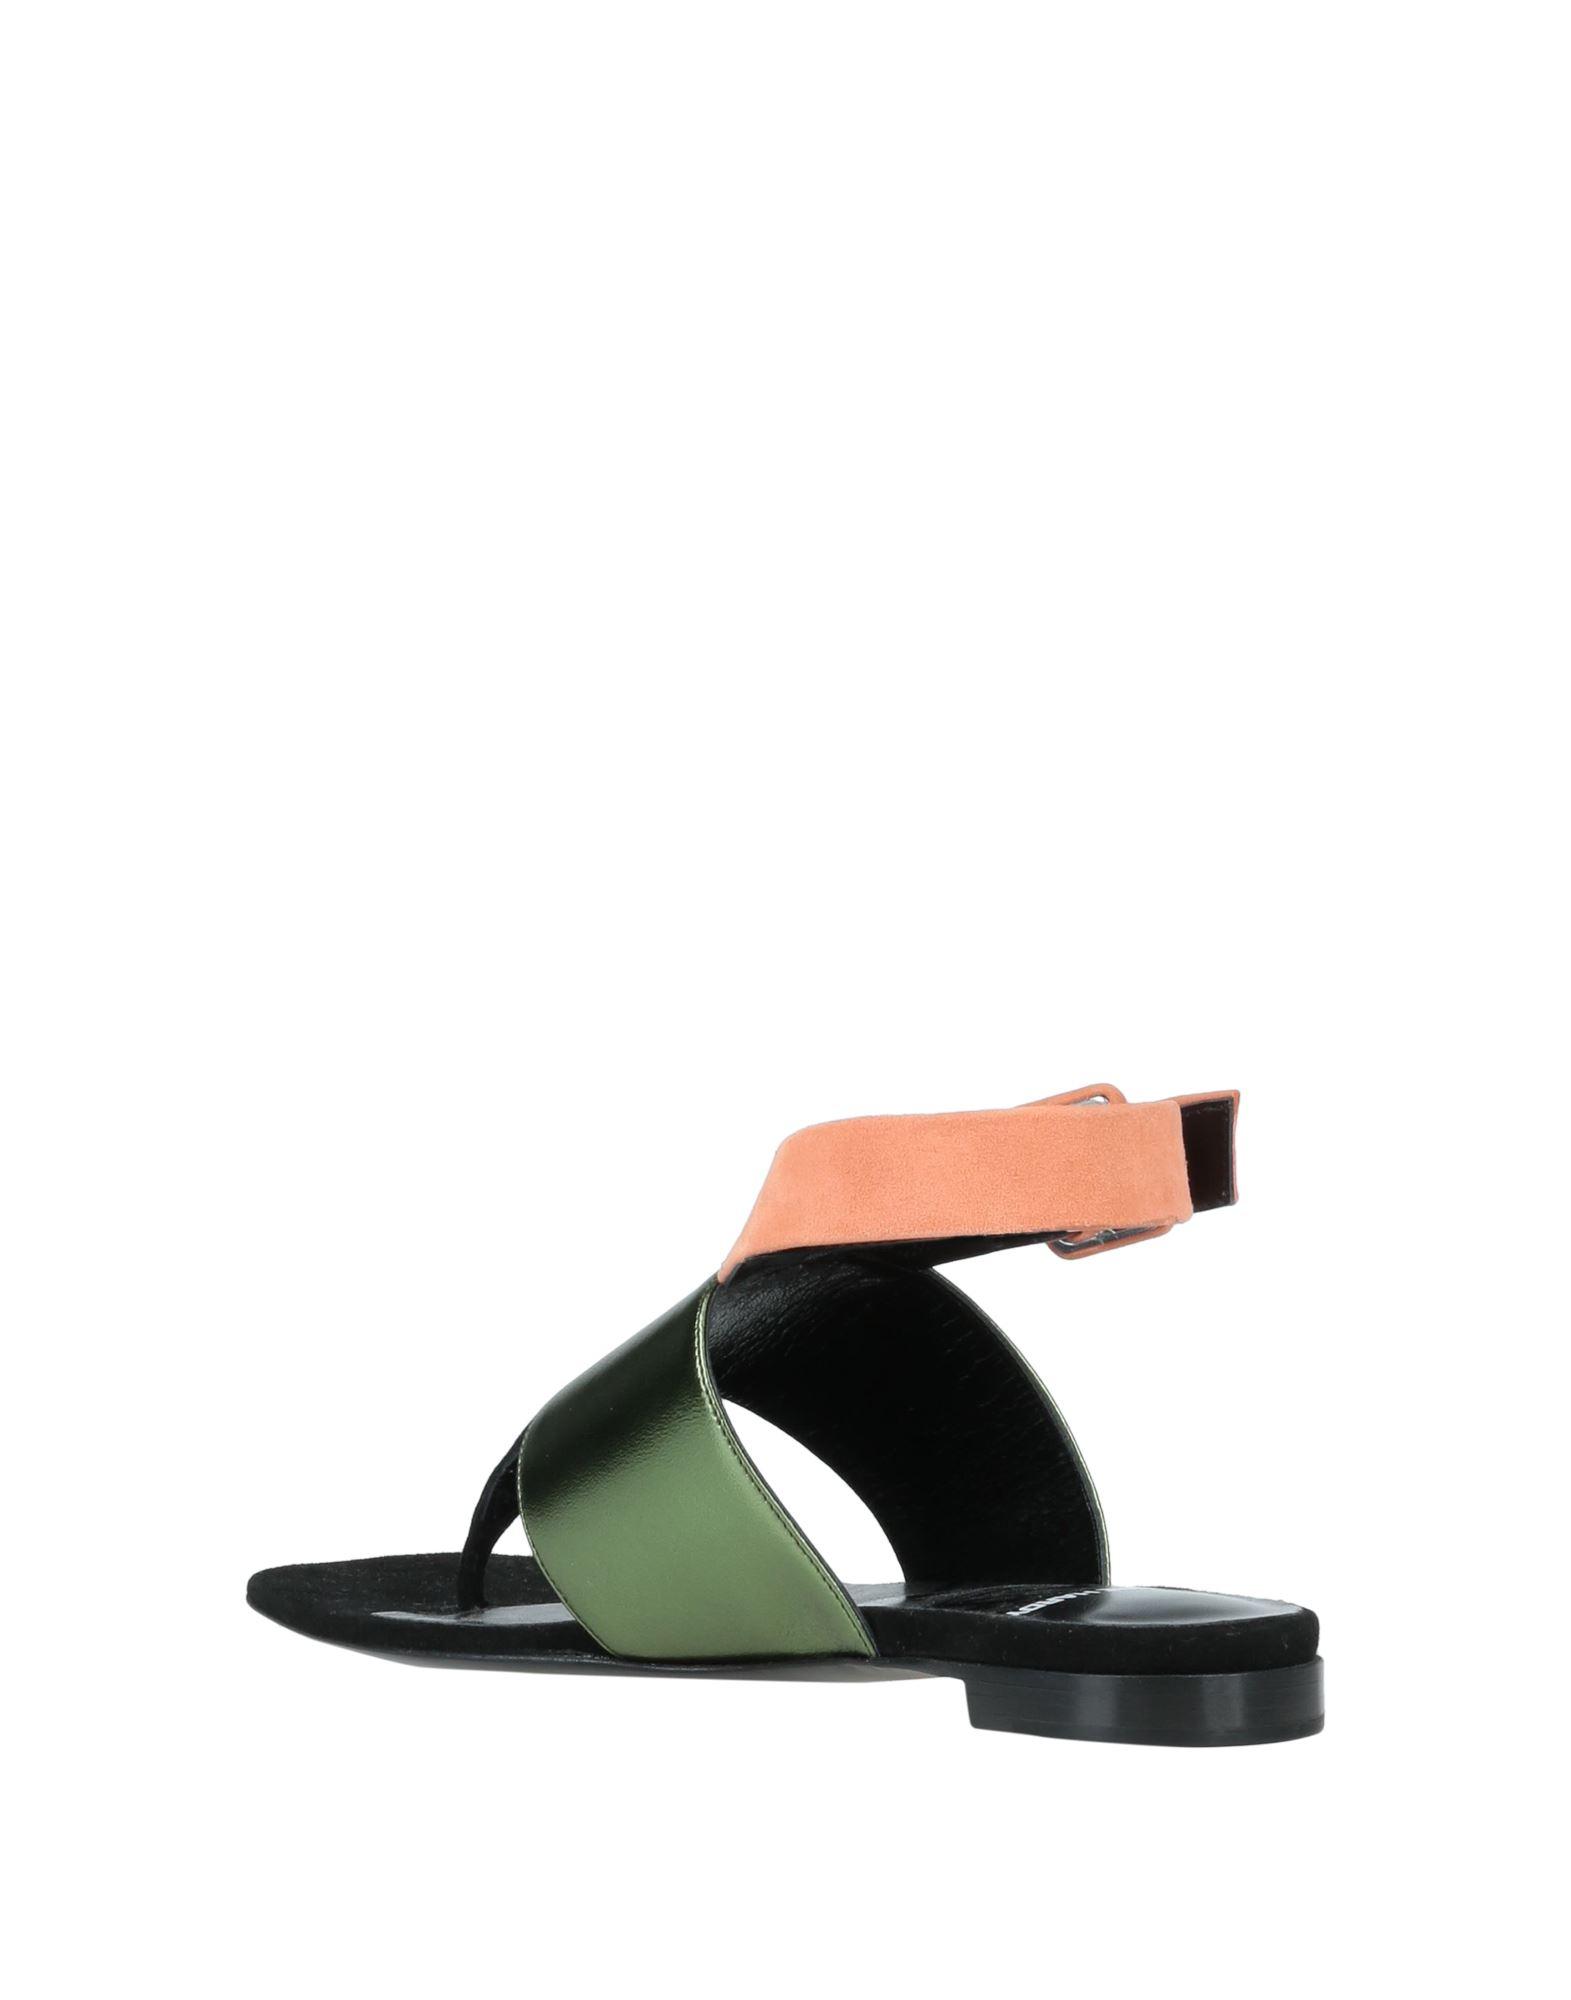 Pierre Hardy Toe Post Sandals in Green | Lyst